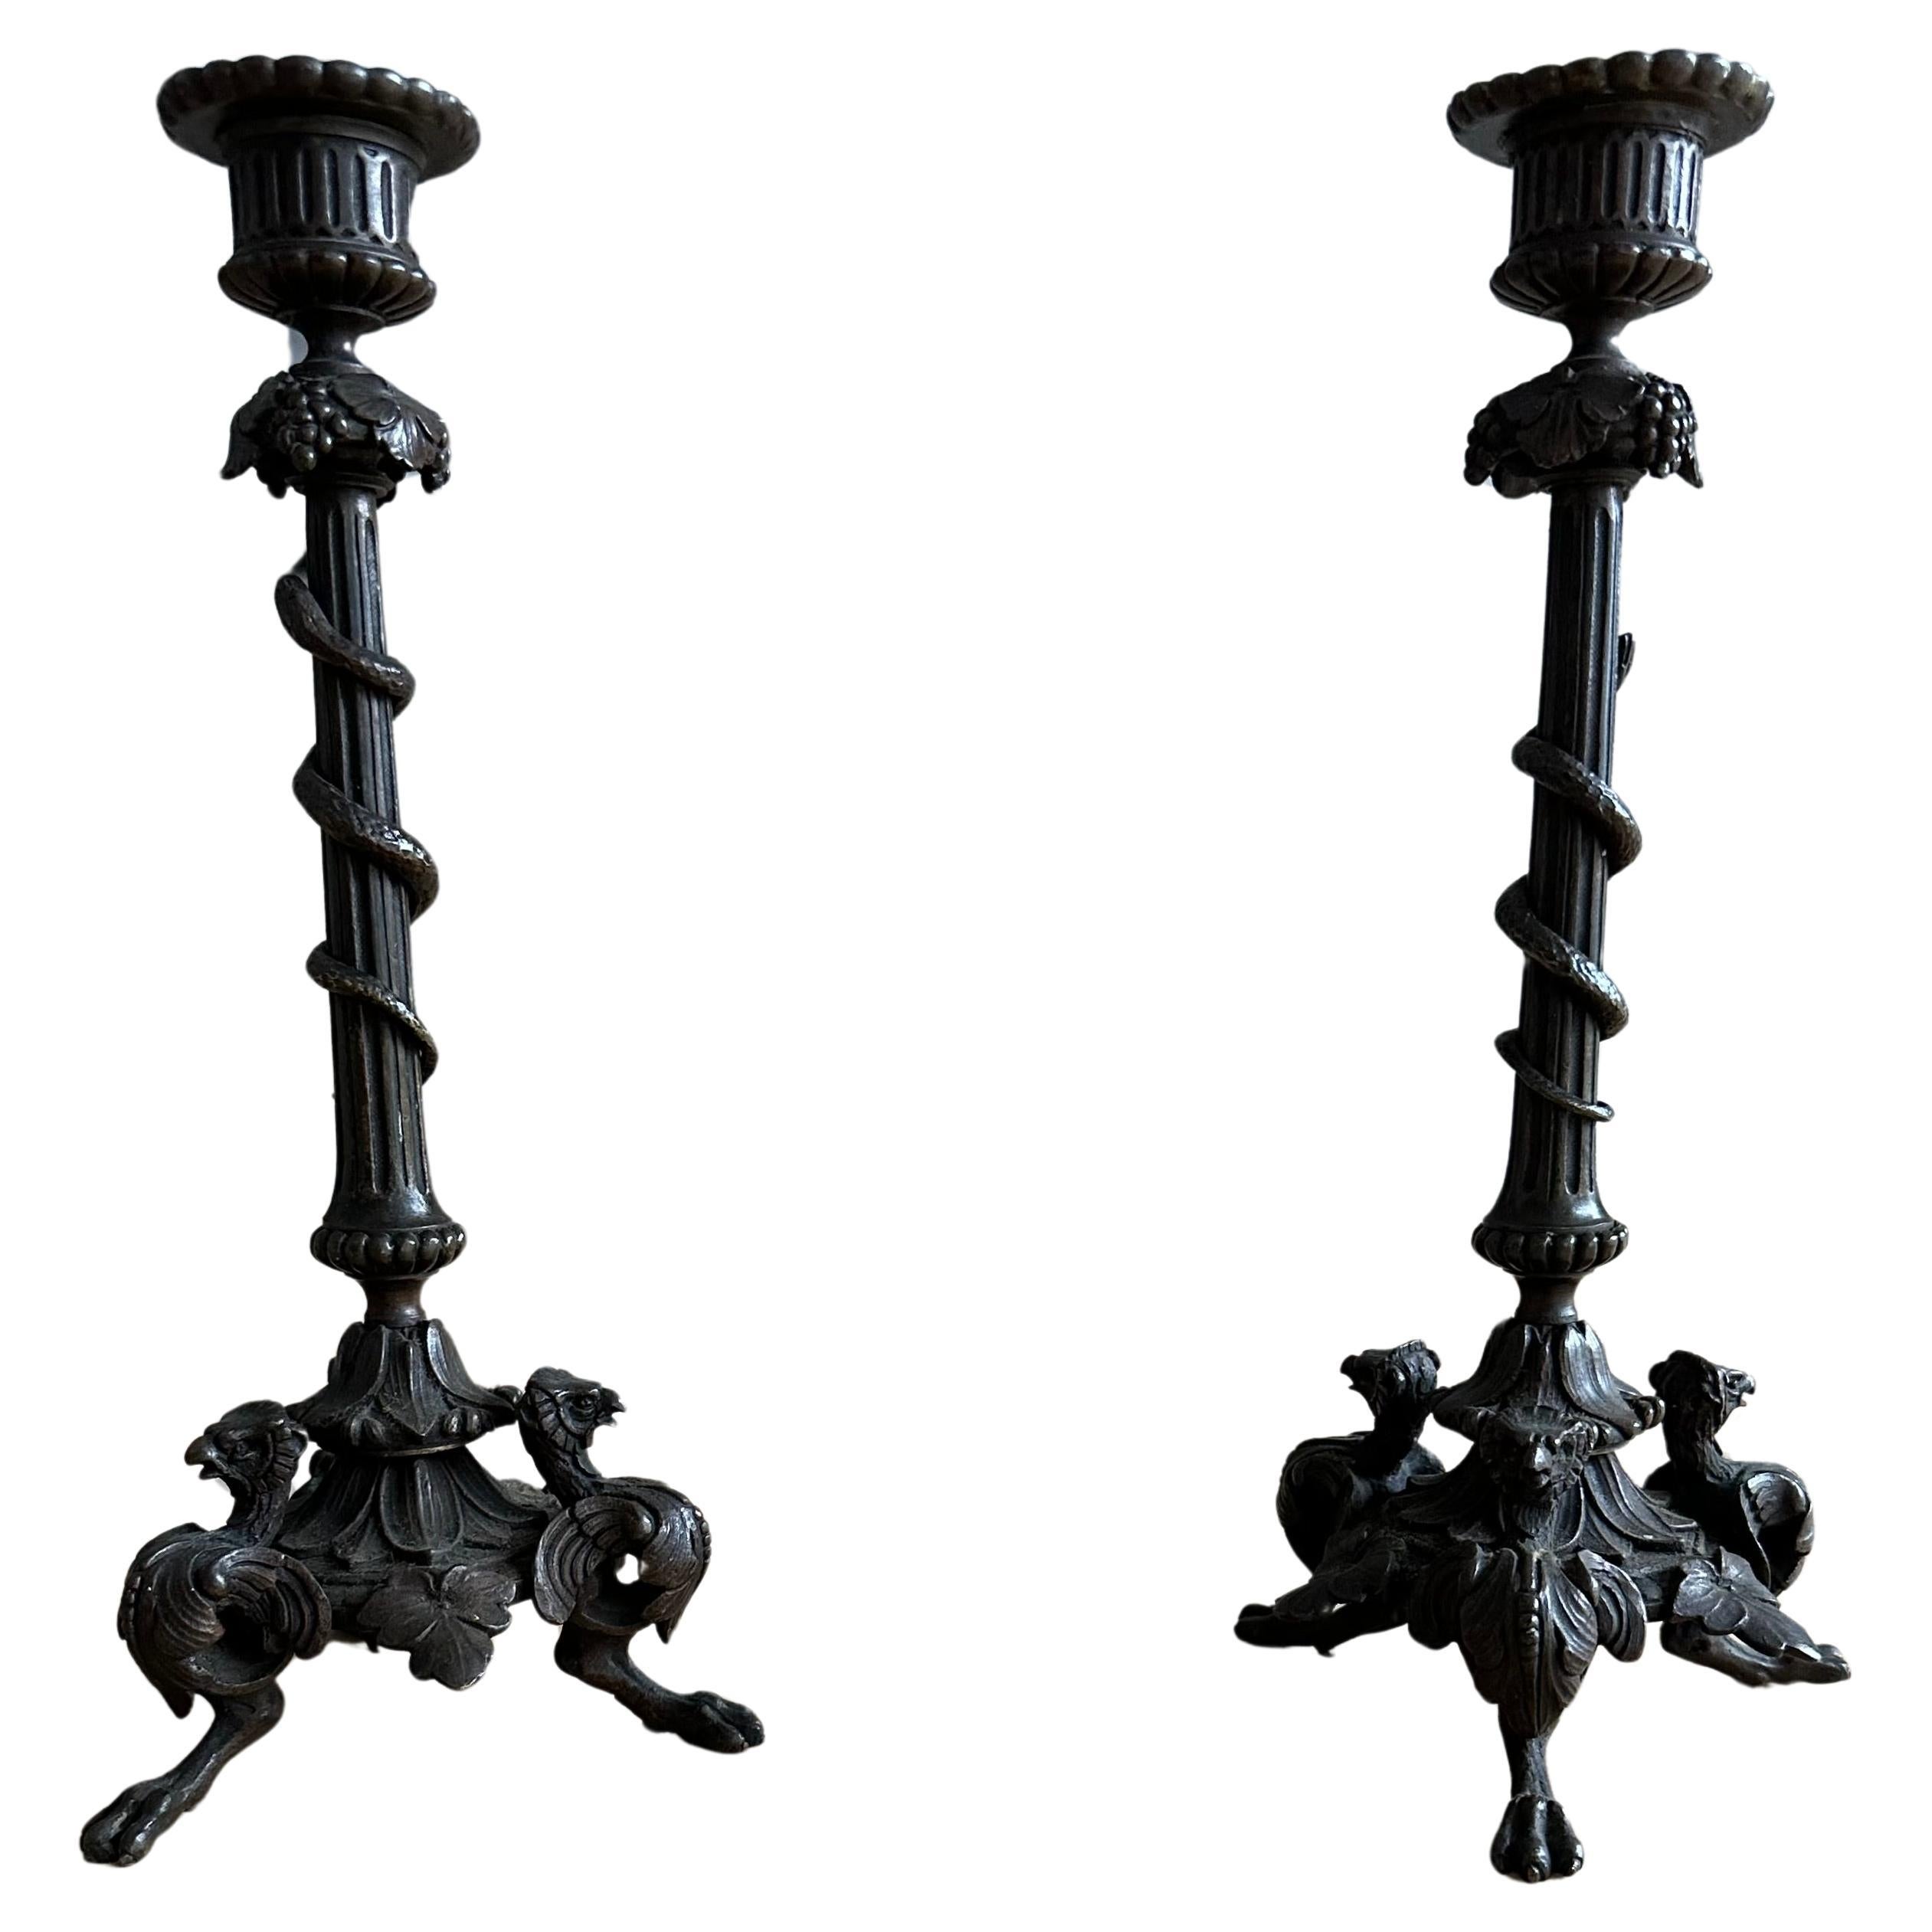 Great Pair of Antique 19th Century Bronze Candlesks with Phoenix Sculptures (Paire de chandeliers anciens en bronze du 19ème siècle avec des sculptures de Phoenix)